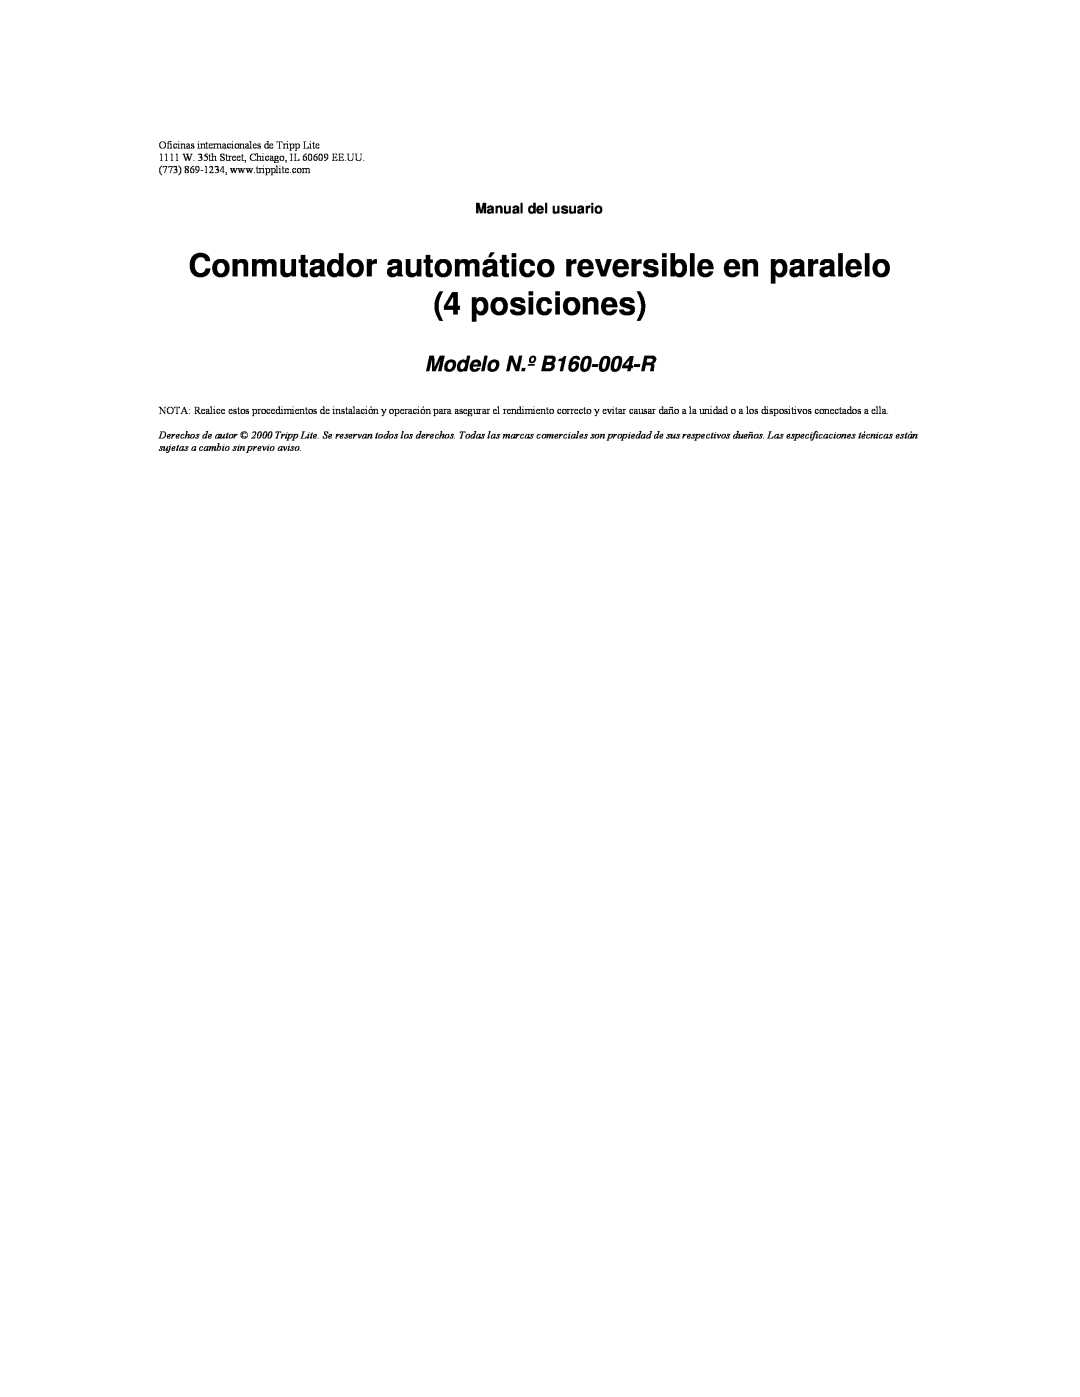 Tripp Lite Conmutador automático reversible en paralelo 4 posiciones, Modelo N.º B160-004-R, Manual del usuario 